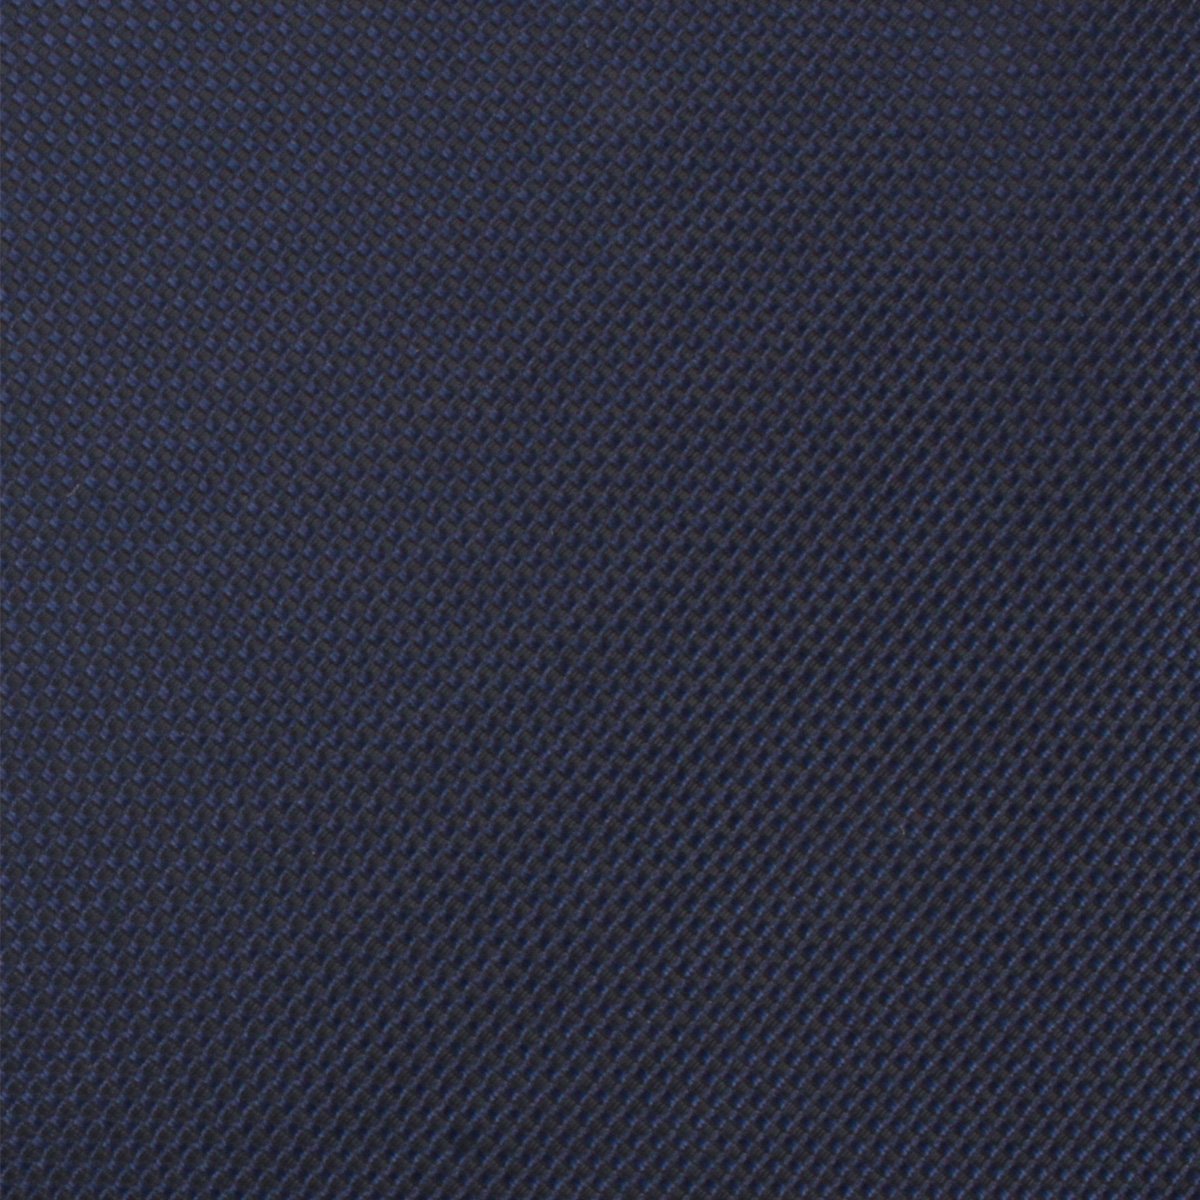 Navy Blue Oxford Stitch Necktie Fabric